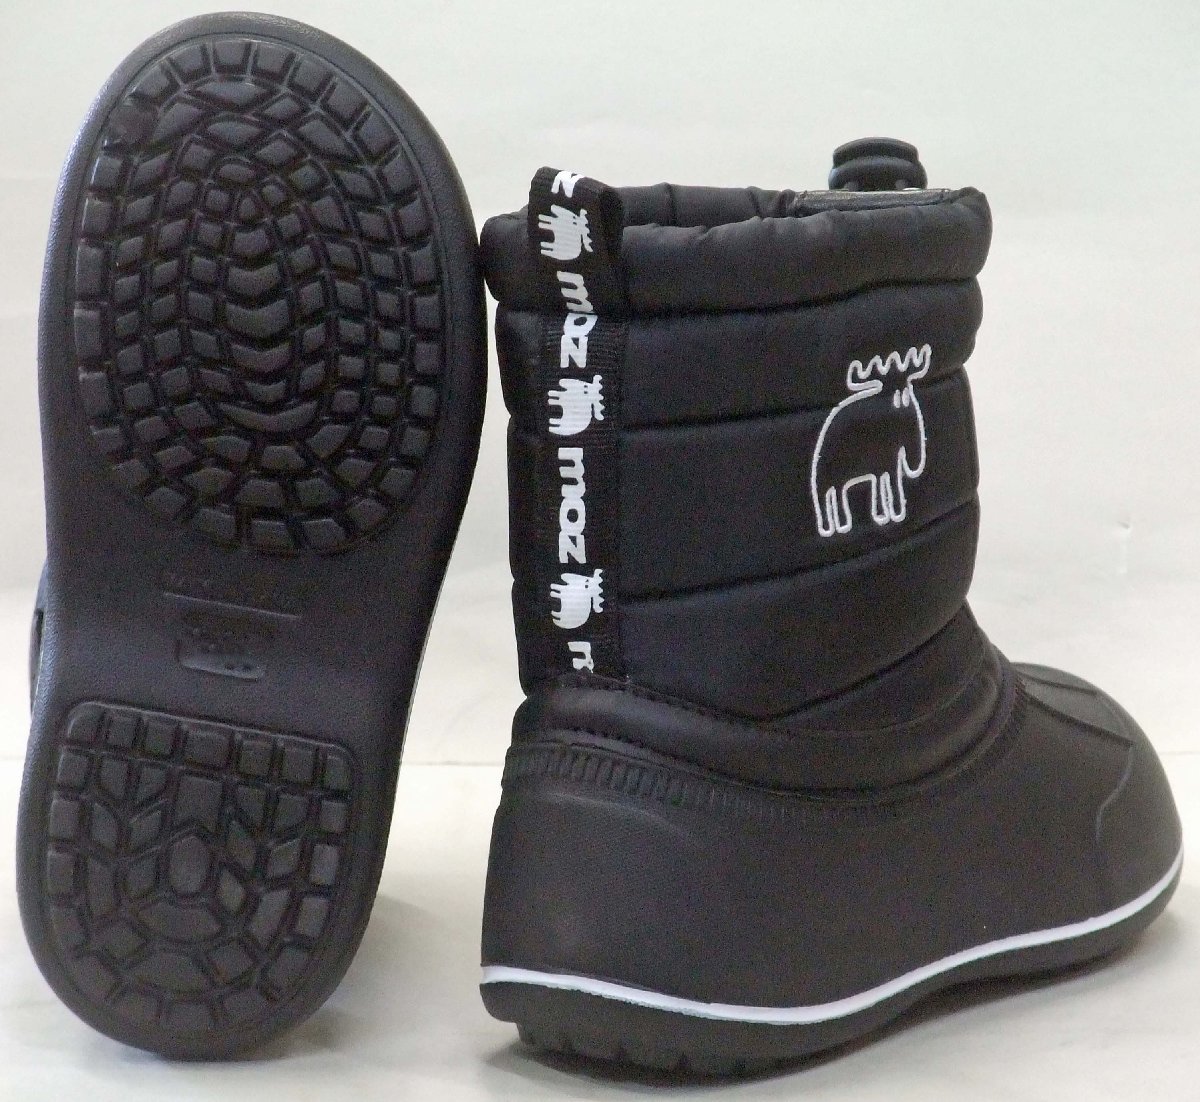  доставка бесплатно  MOZ ... MZ-8209  водонепроницаемый   защита от холода   ... ботинки   черный  16cm  детский   легкий (по весу)   снег  ... ботинки  ... ...  тёплый   снег  страна Характеристики 